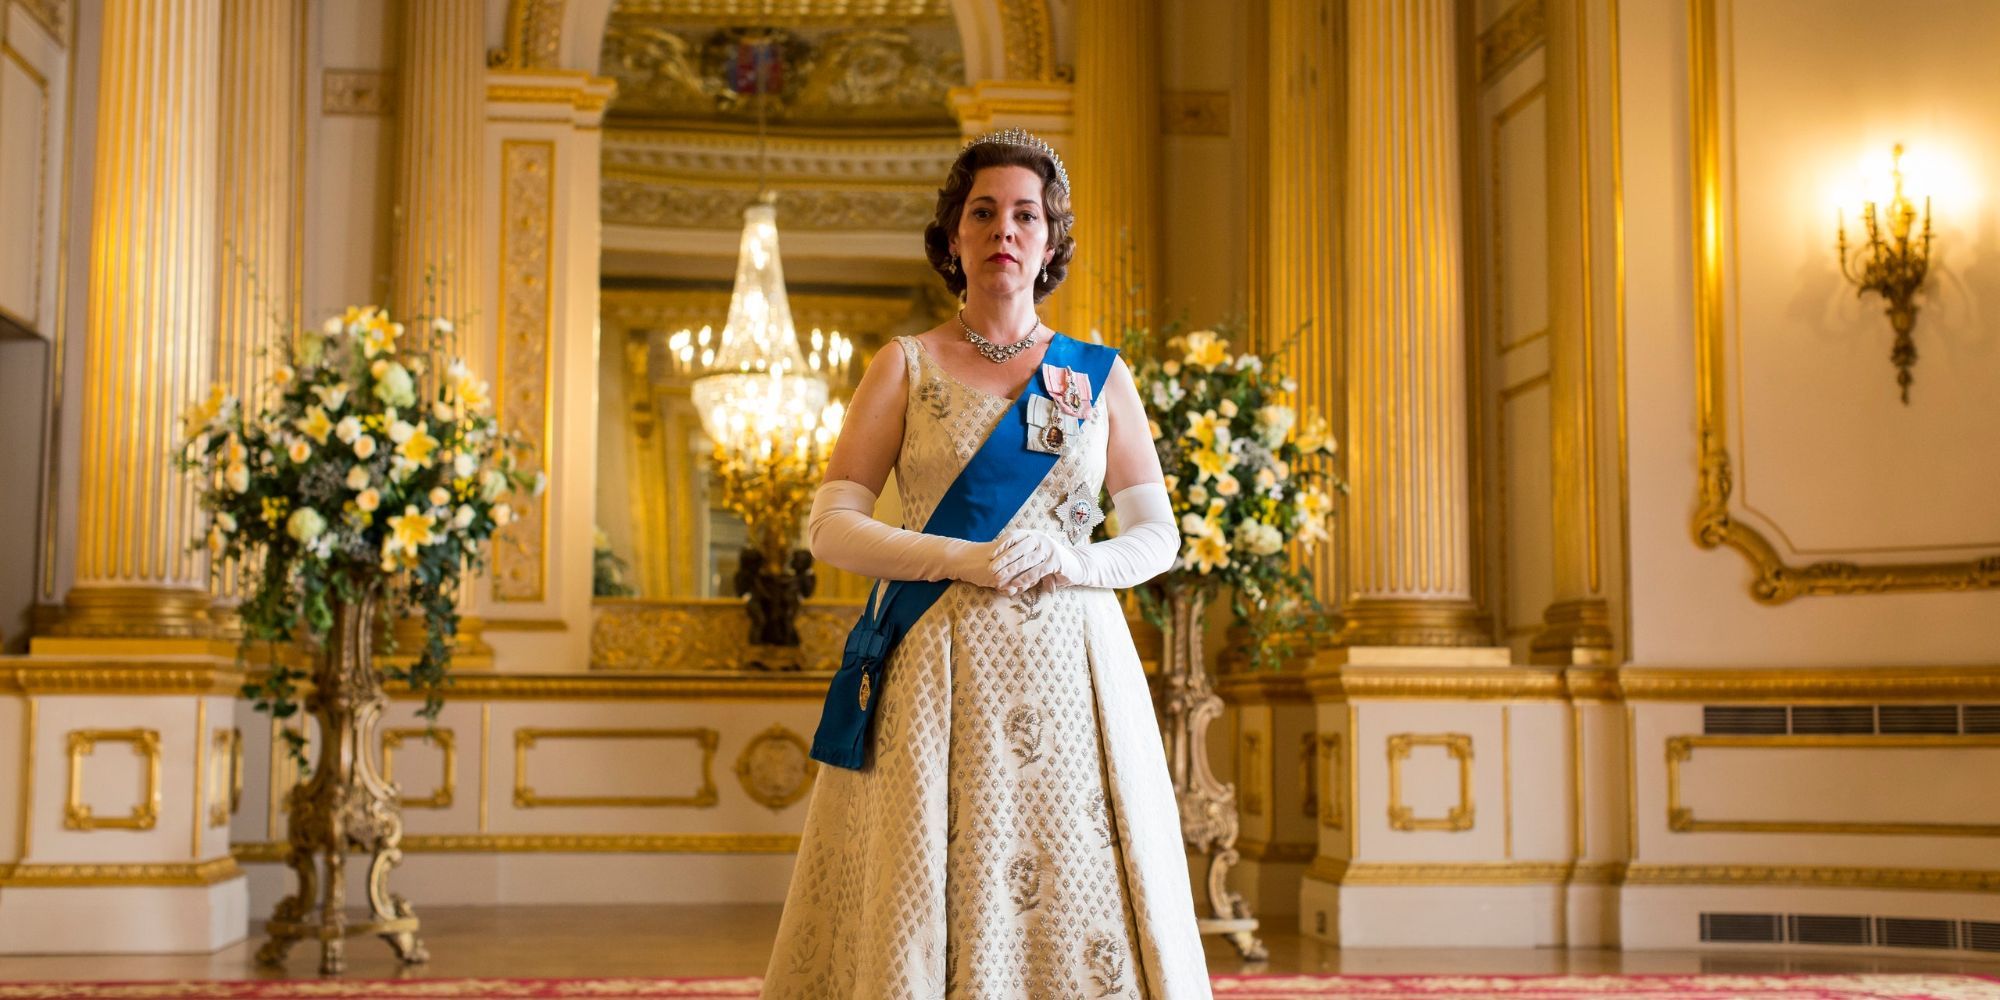 Olivia Colman as Queen Elizabeth II in a white dress in The Crown